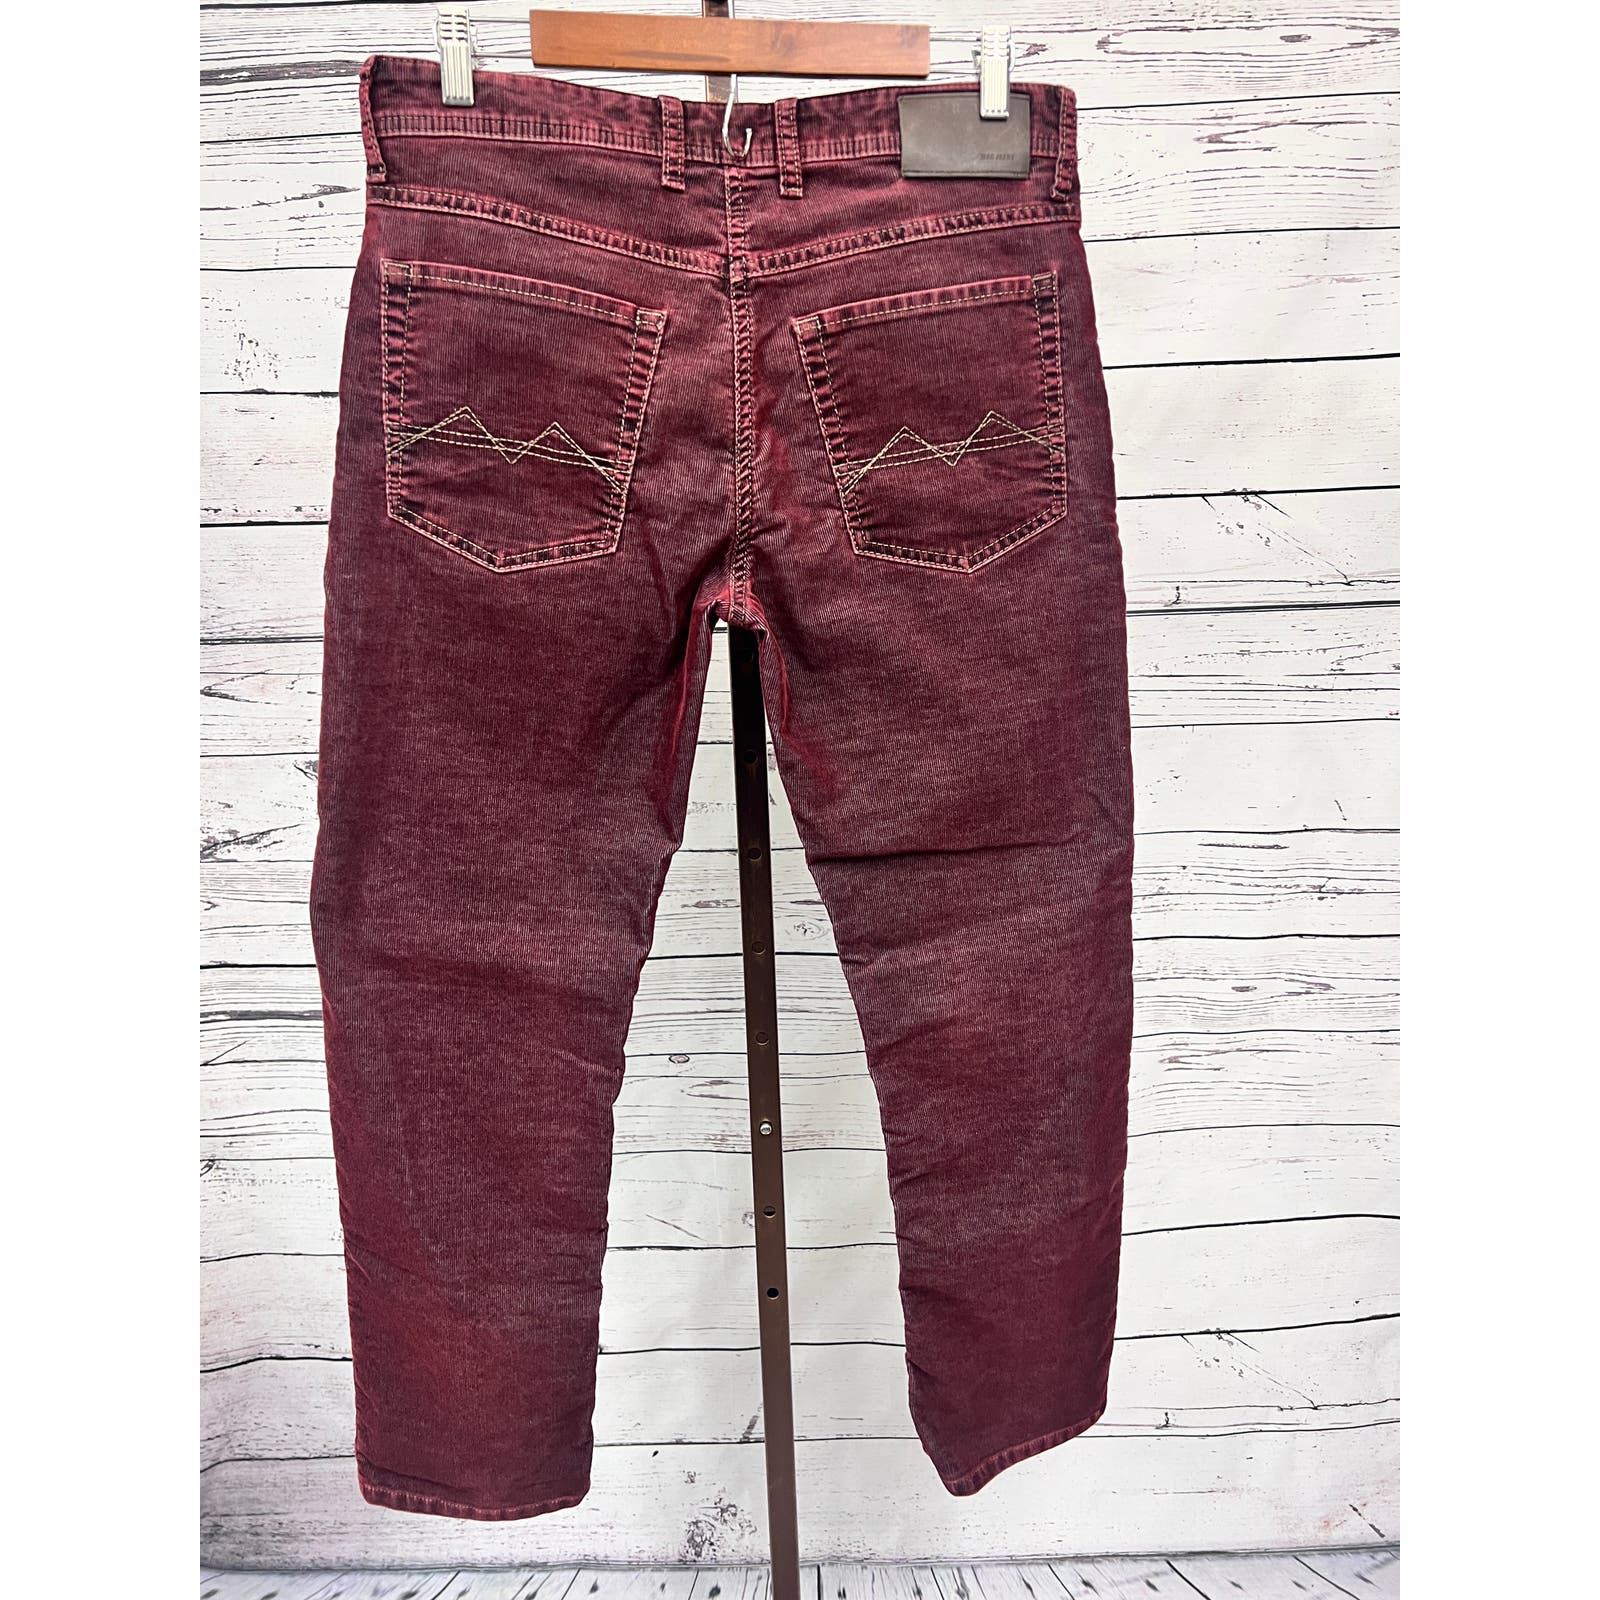 MAC Jeans Arne Pipe Corduroy Pants Mens 33x28 Stretch Maroon Vintage Wash